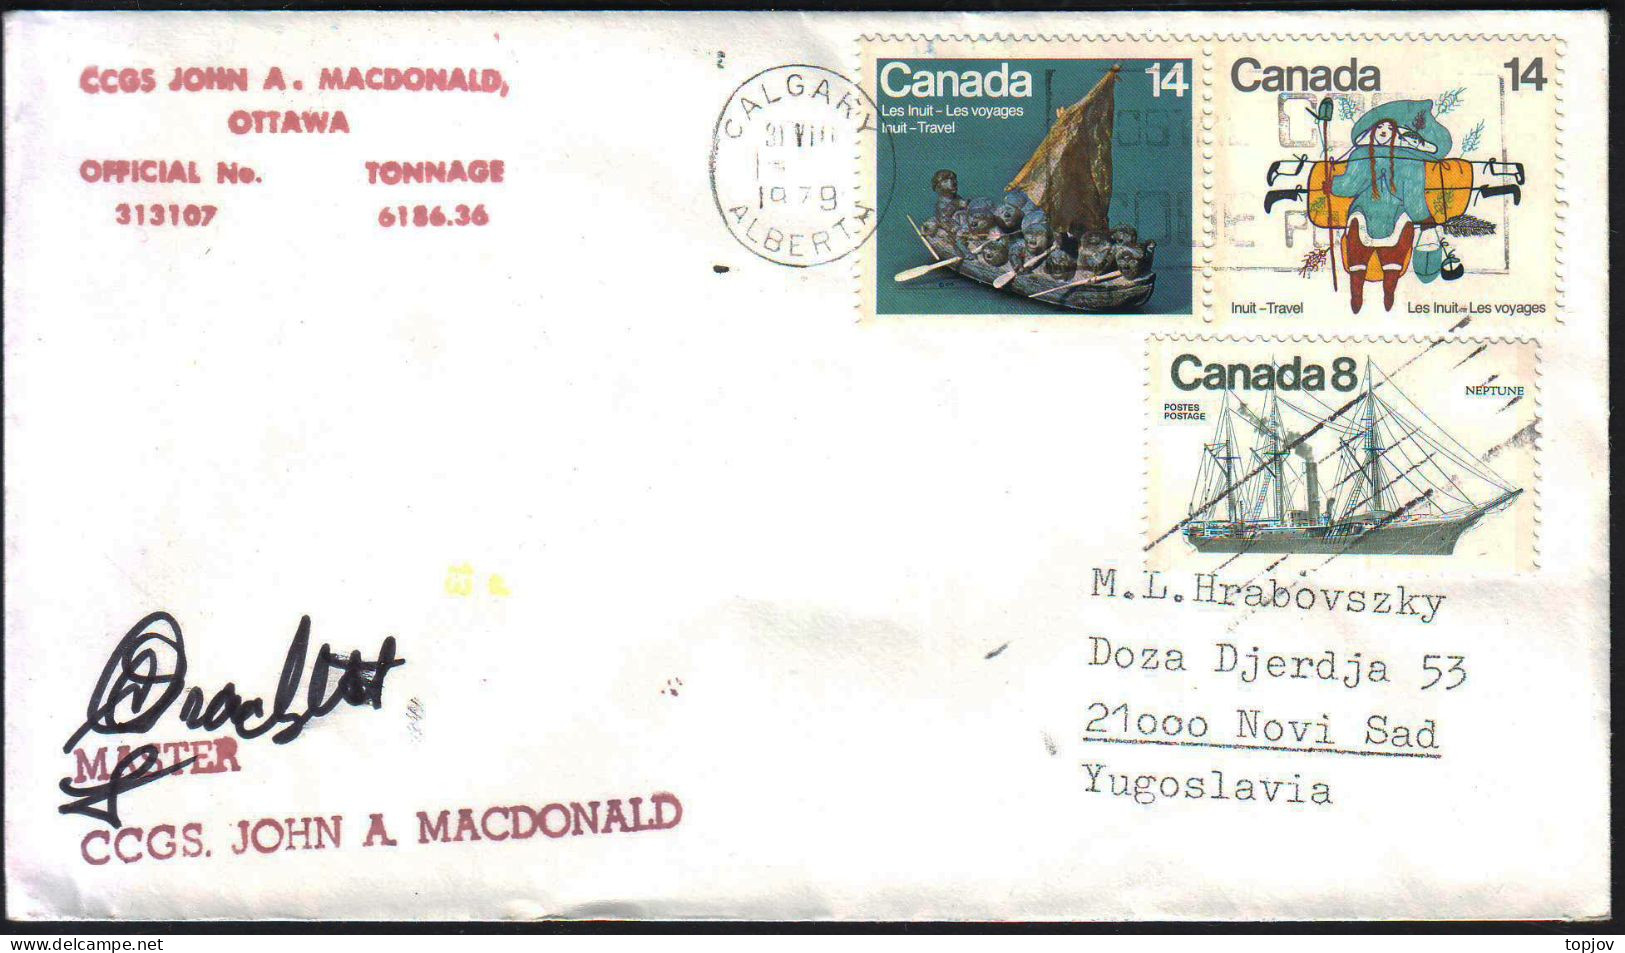 CANADA - CCGS JOHN A. MASDONALD - 1979 - Arktis Expeditionen